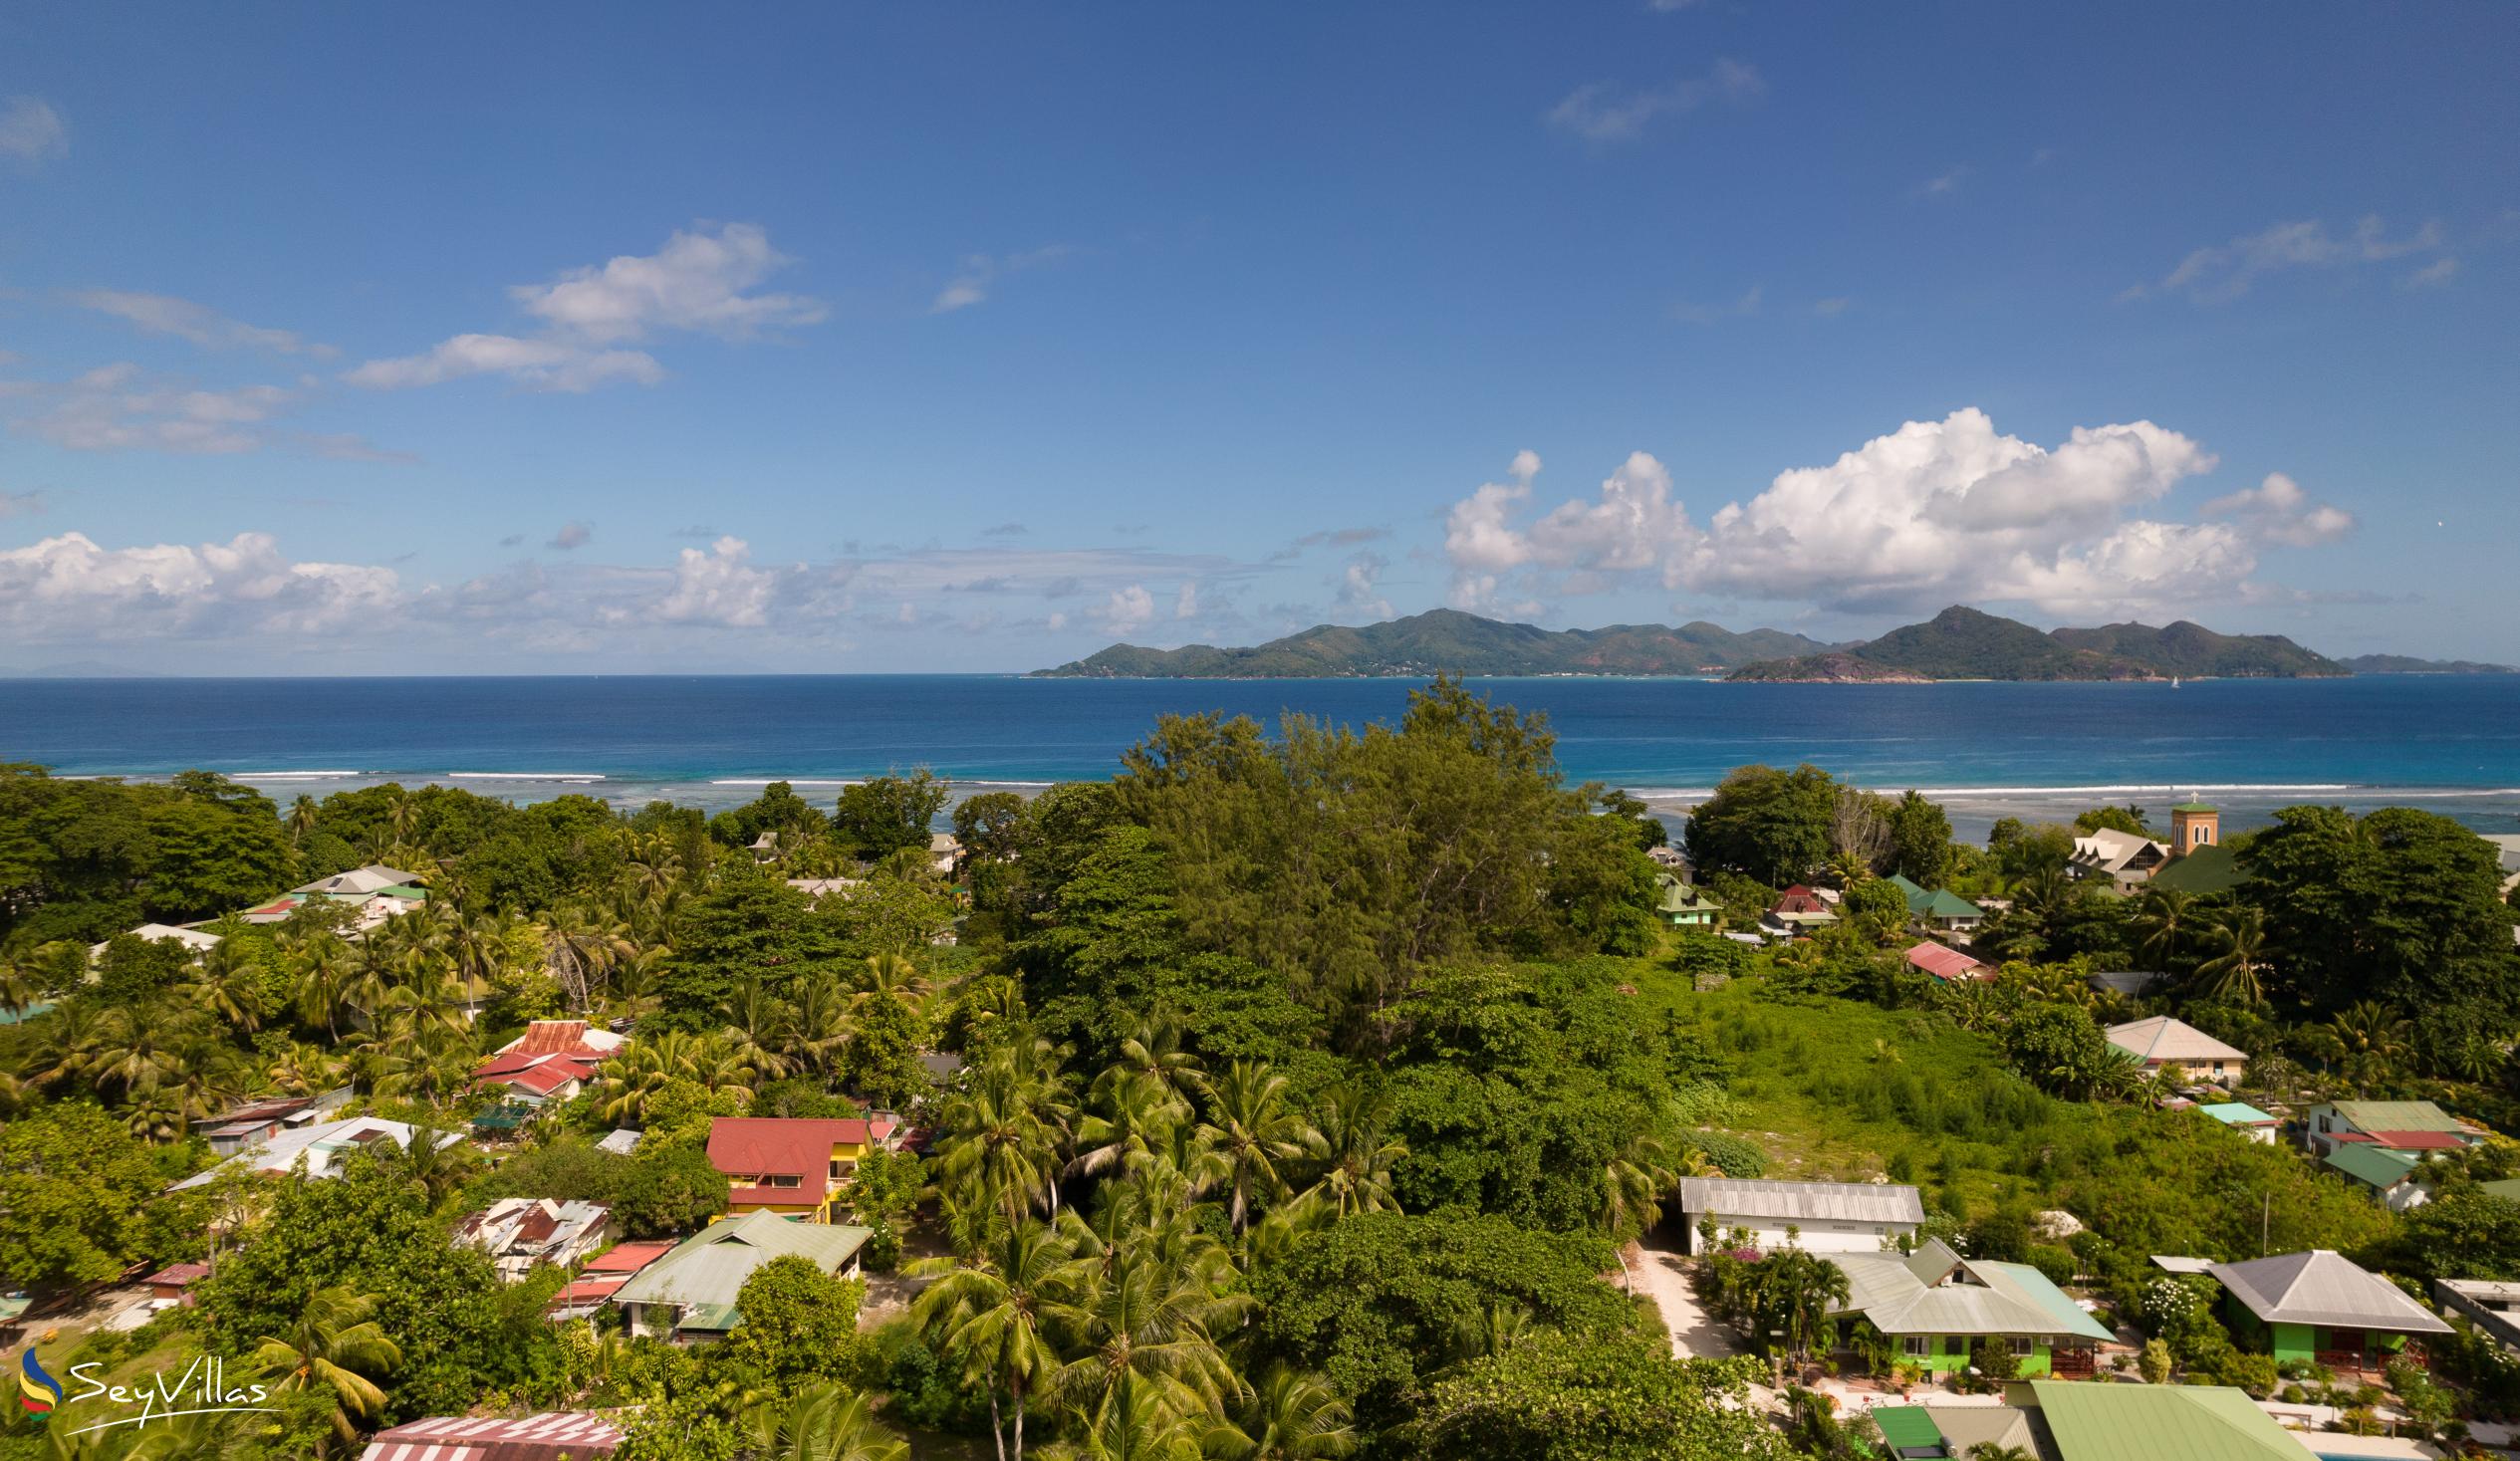 Foto 30: Coco de Mahi - Location - La Digue (Seychelles)